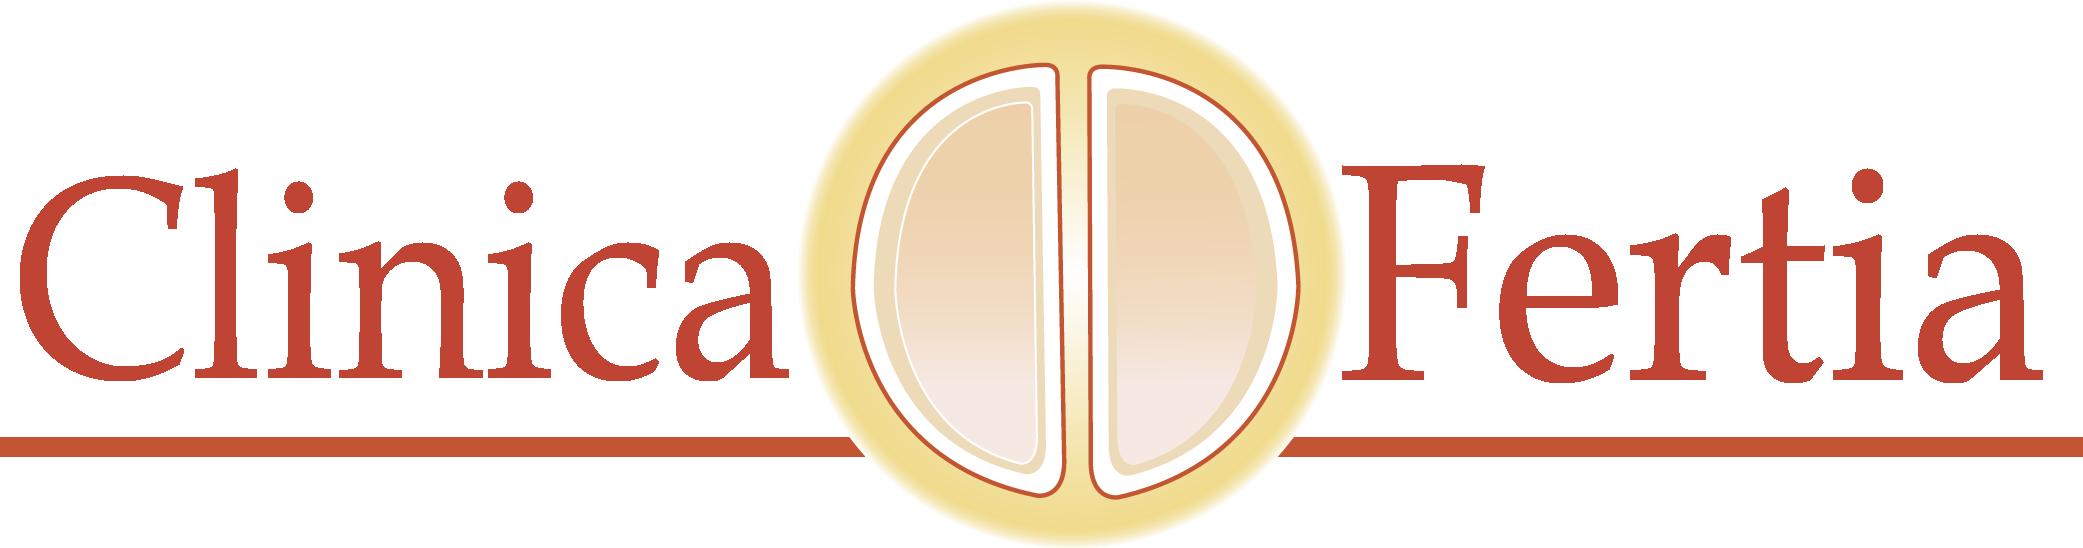 Logotipo de la clínica Clínica Fertia